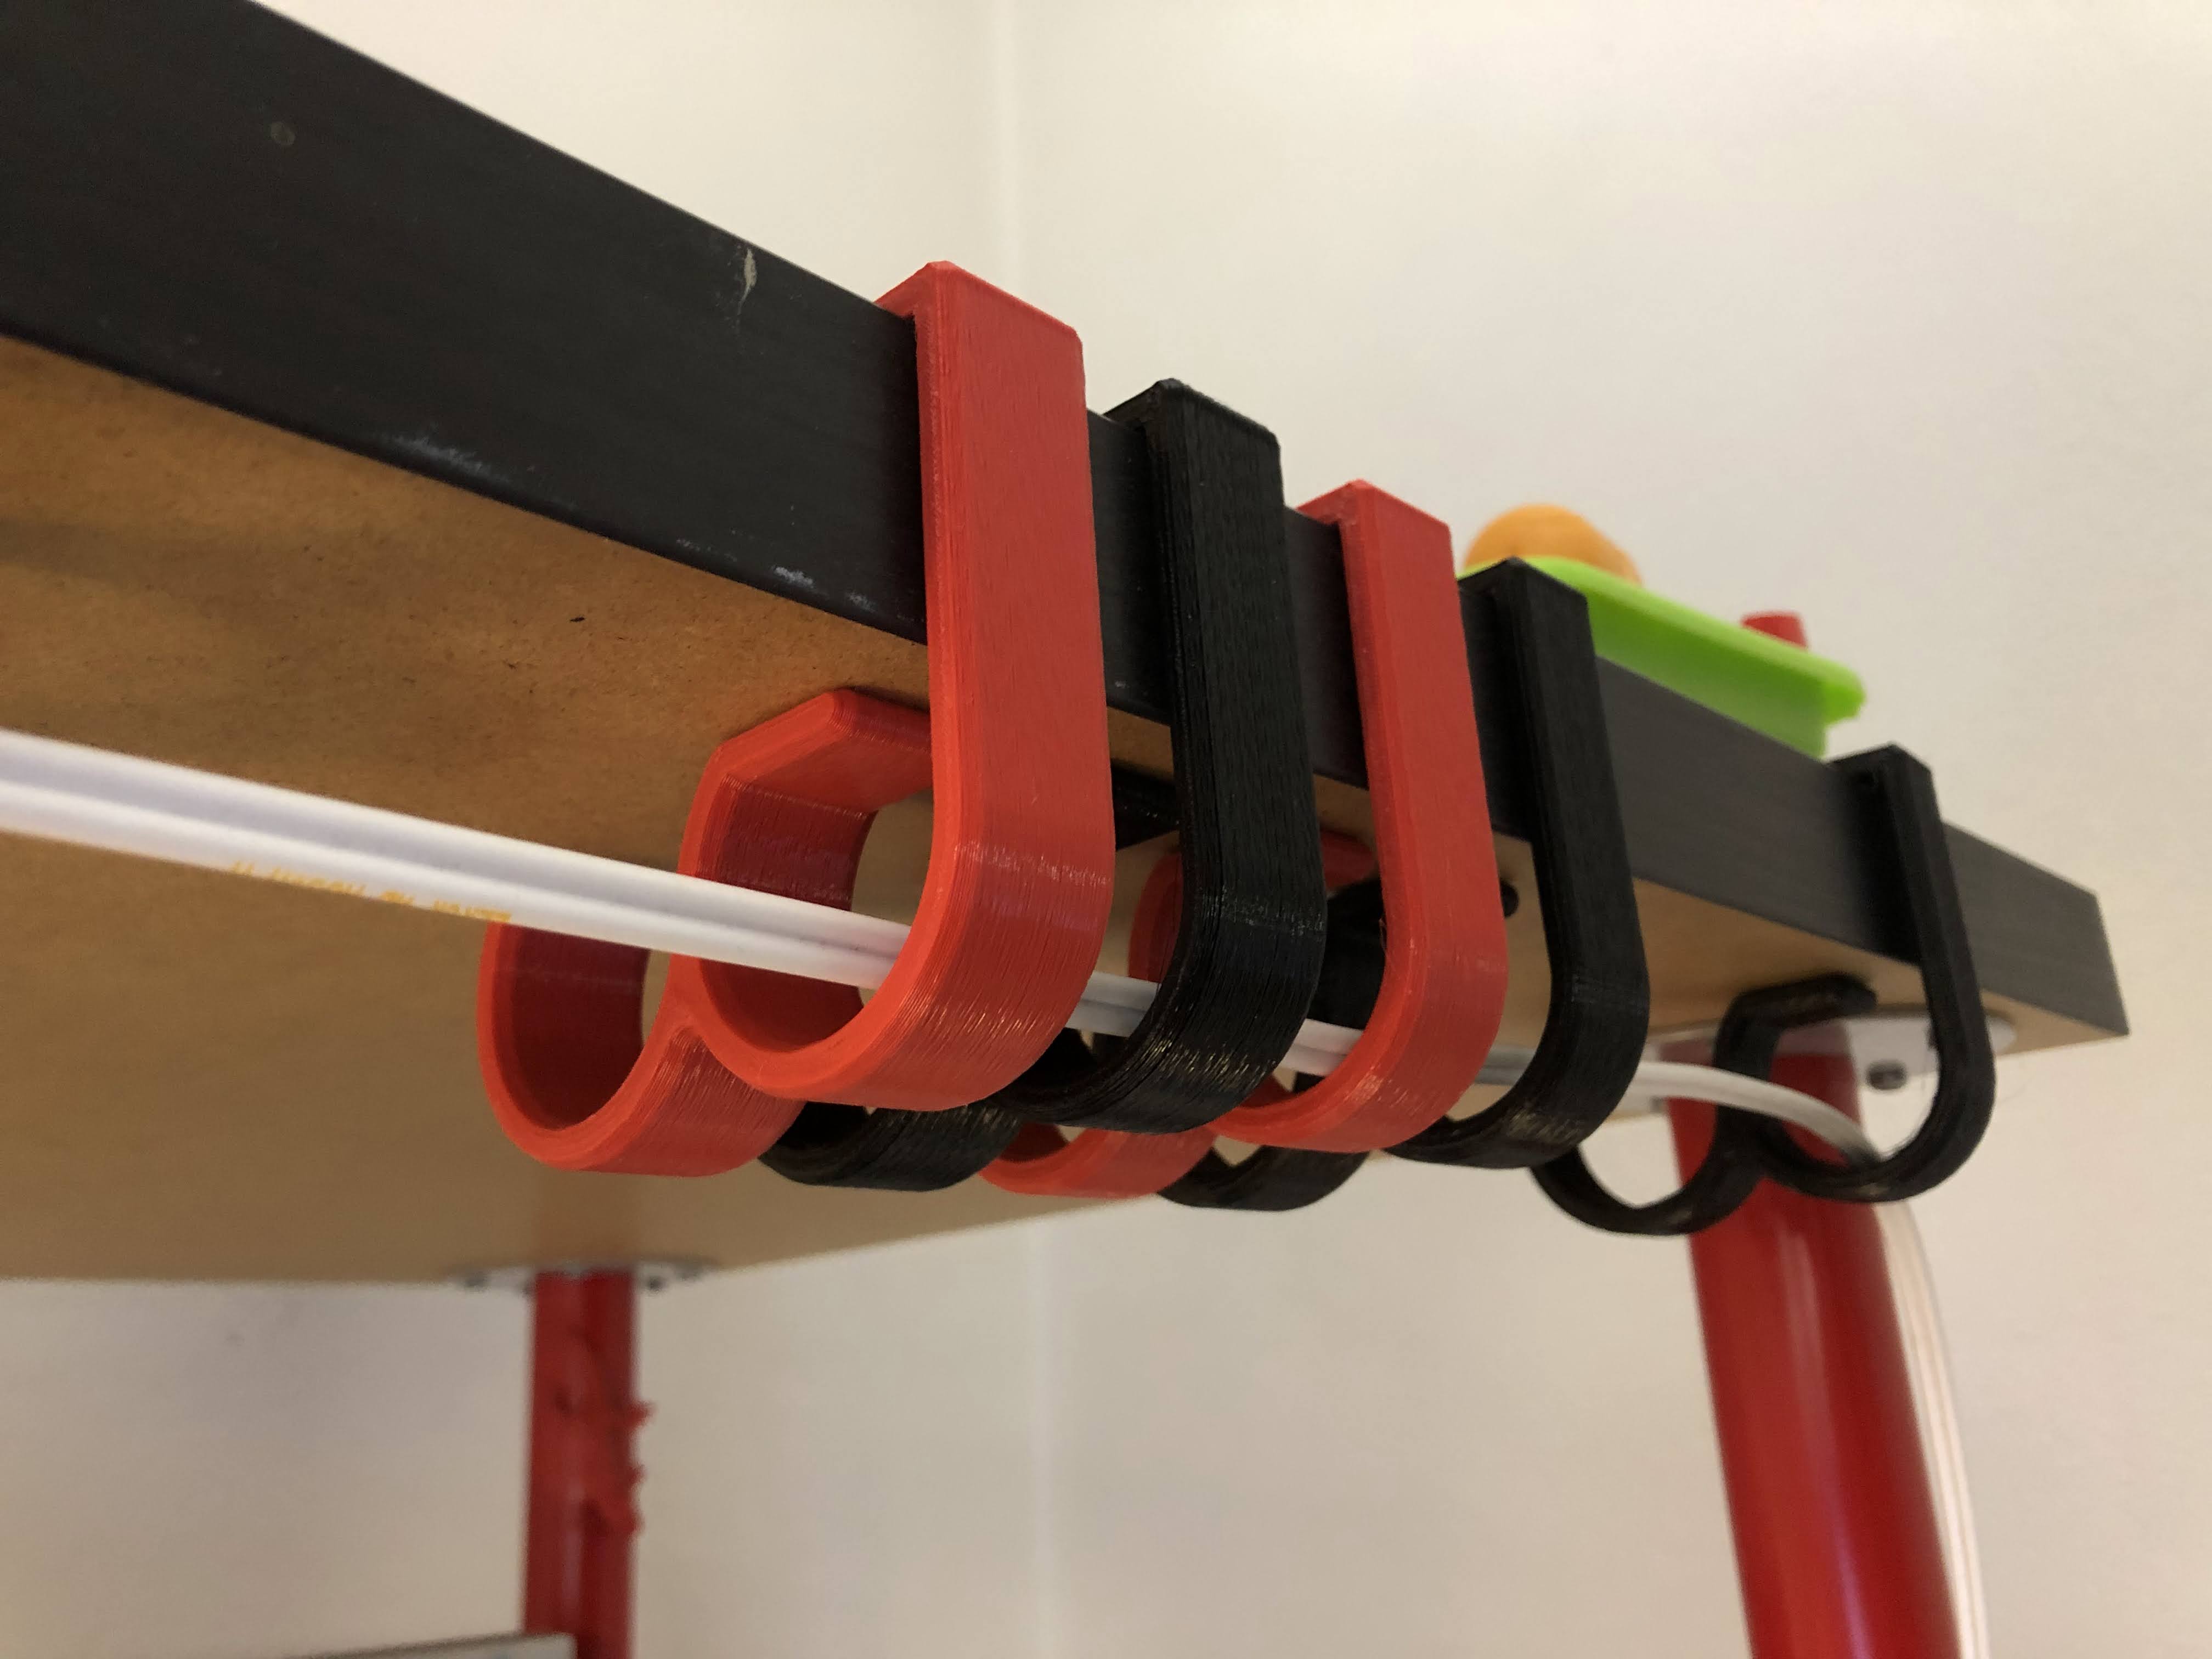 Clip de gestión de cables de escritorio para encimeras de 50 mm - Compatible con Ikea